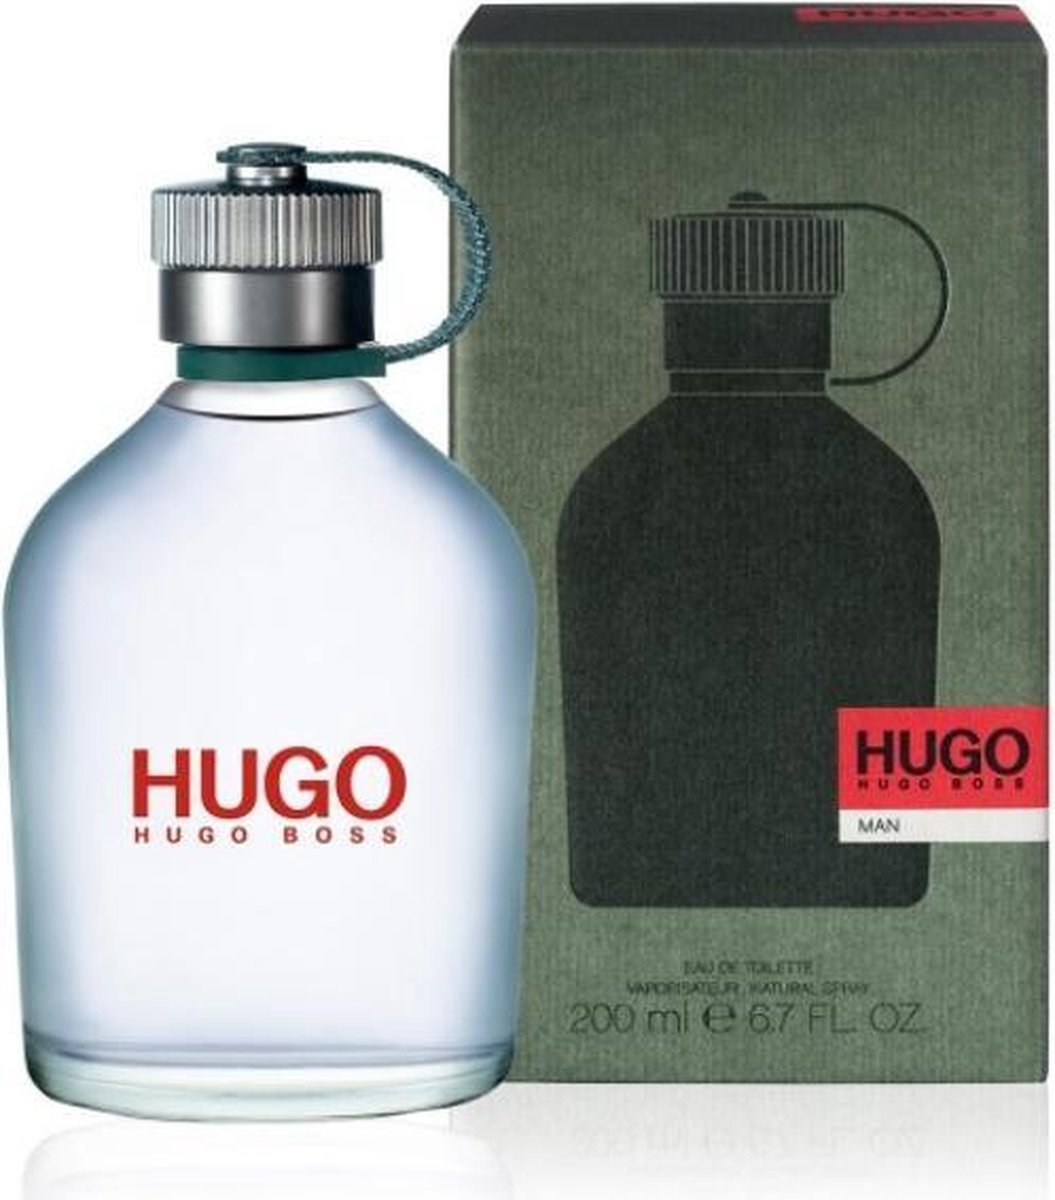 hugo boss 200 ml